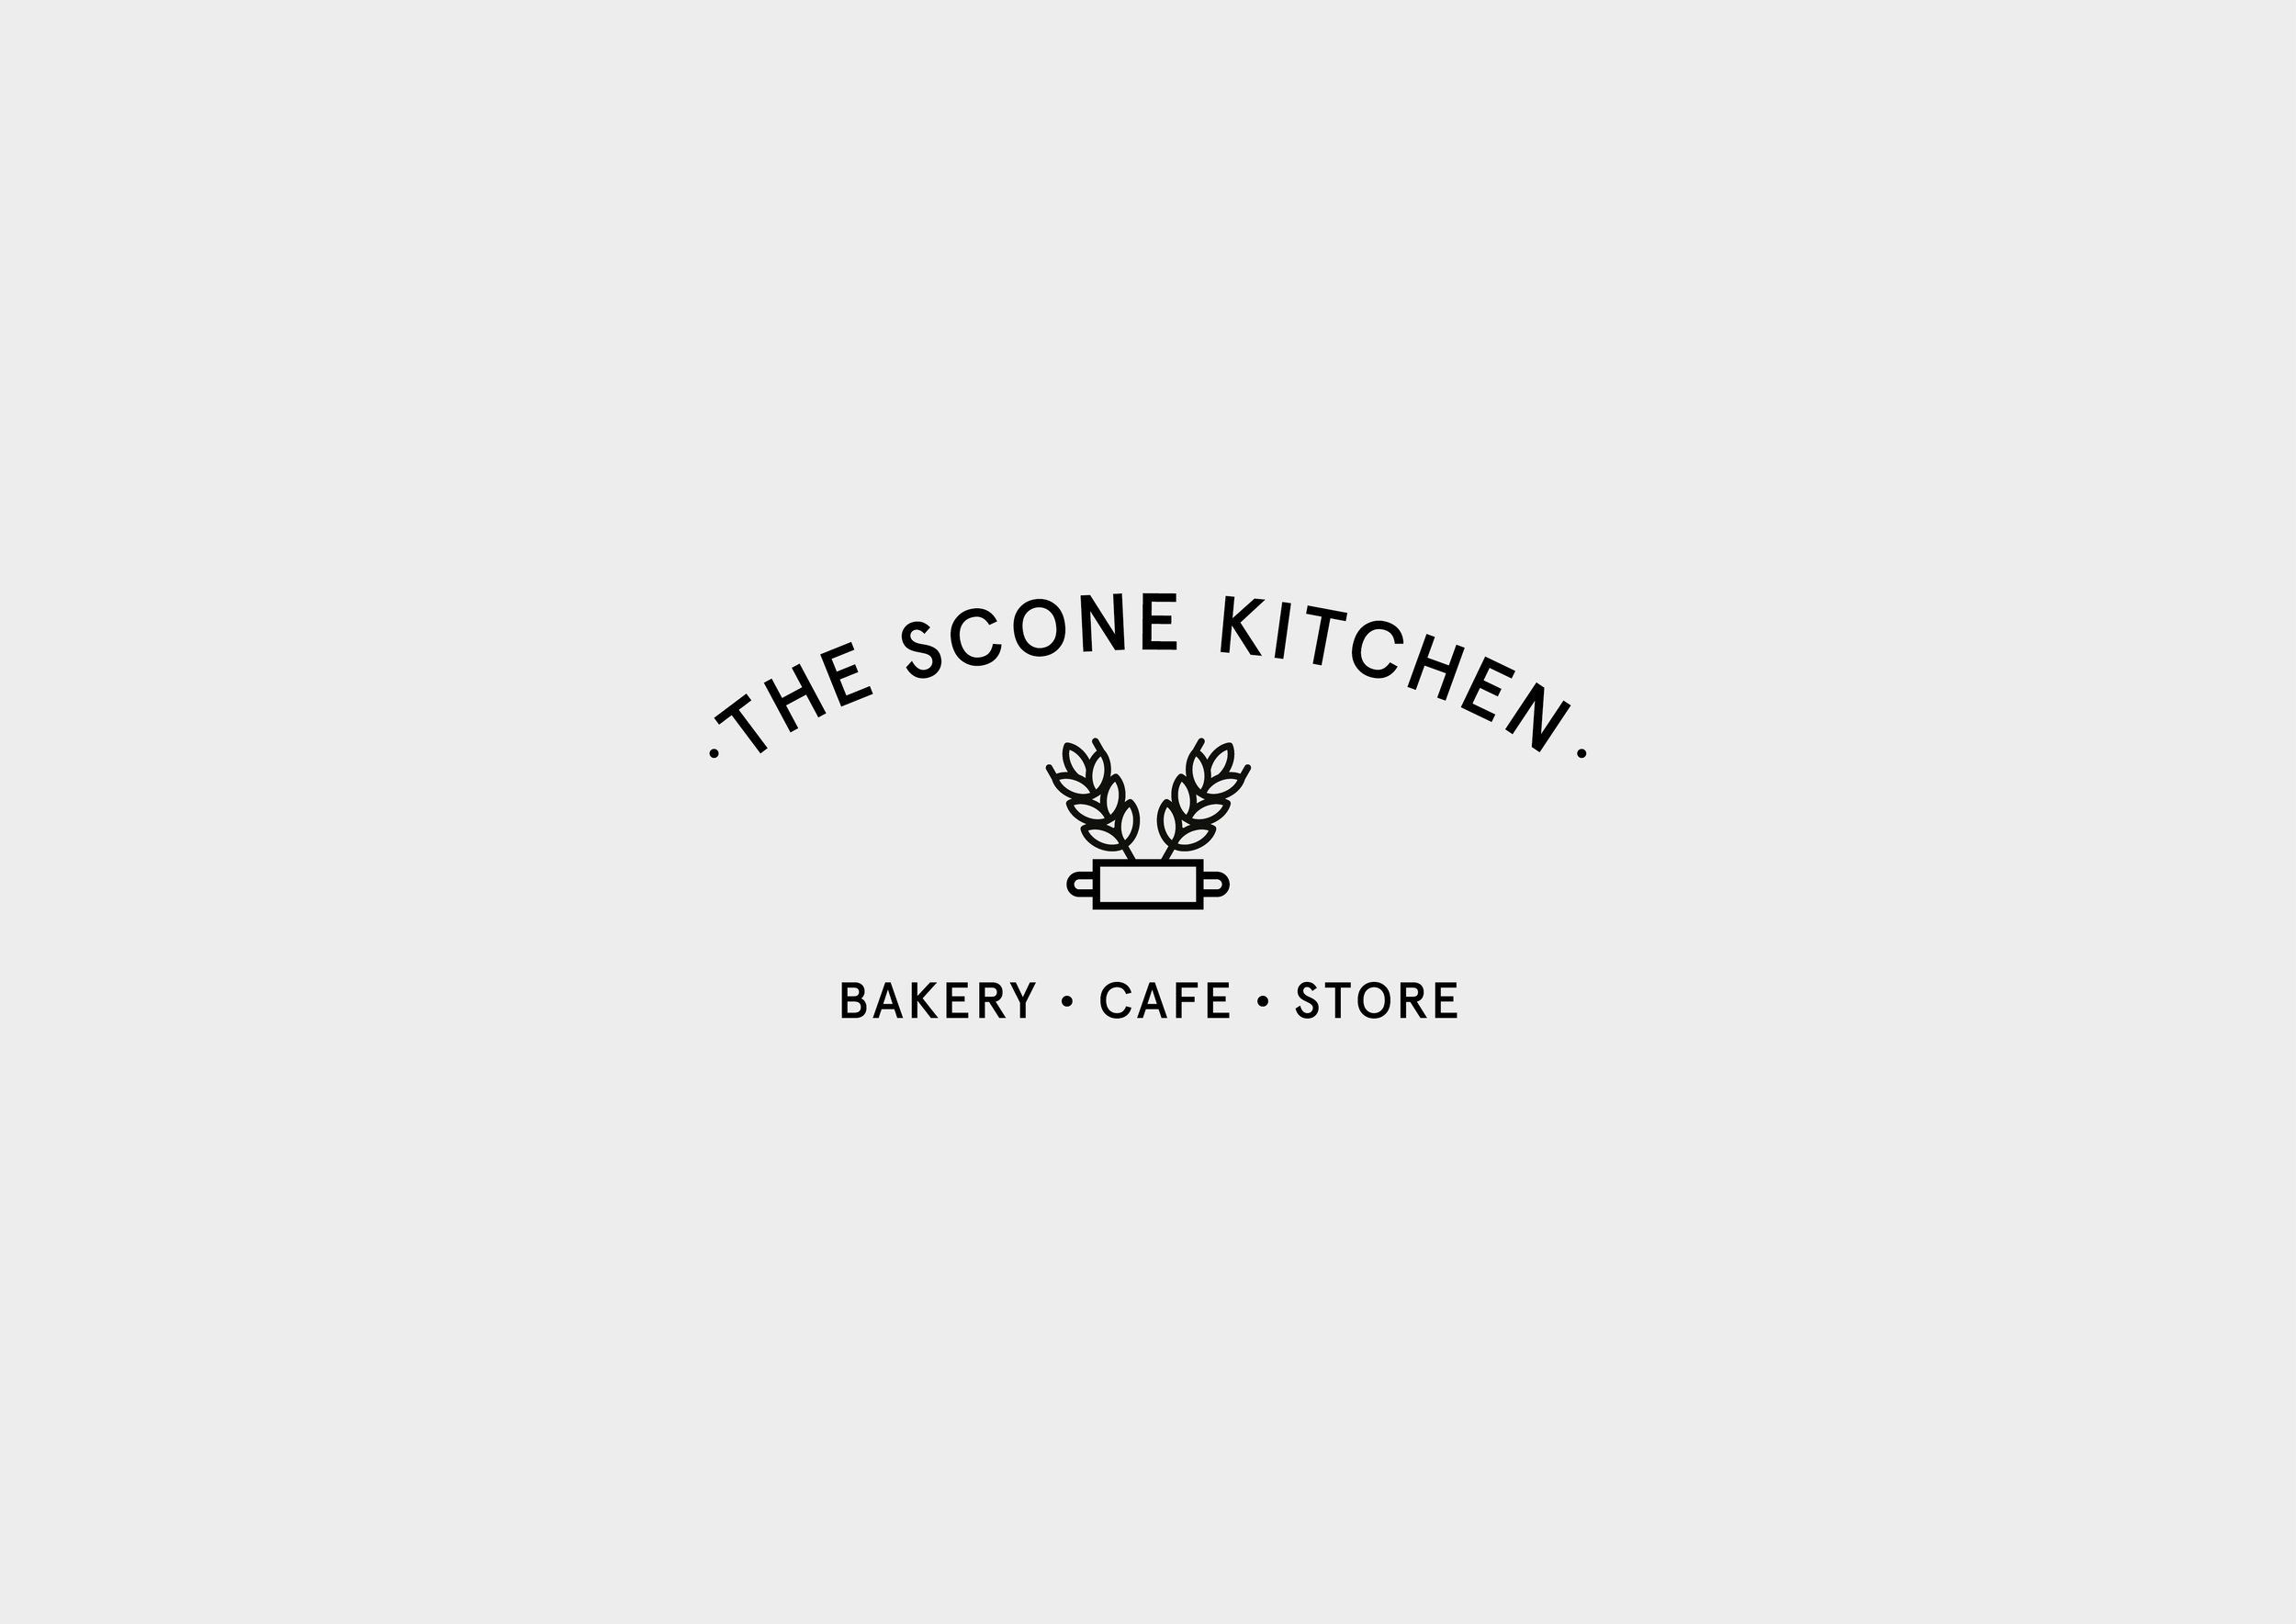 Freelance-graphic-designer-The Scone Kitchen logo in platinum background